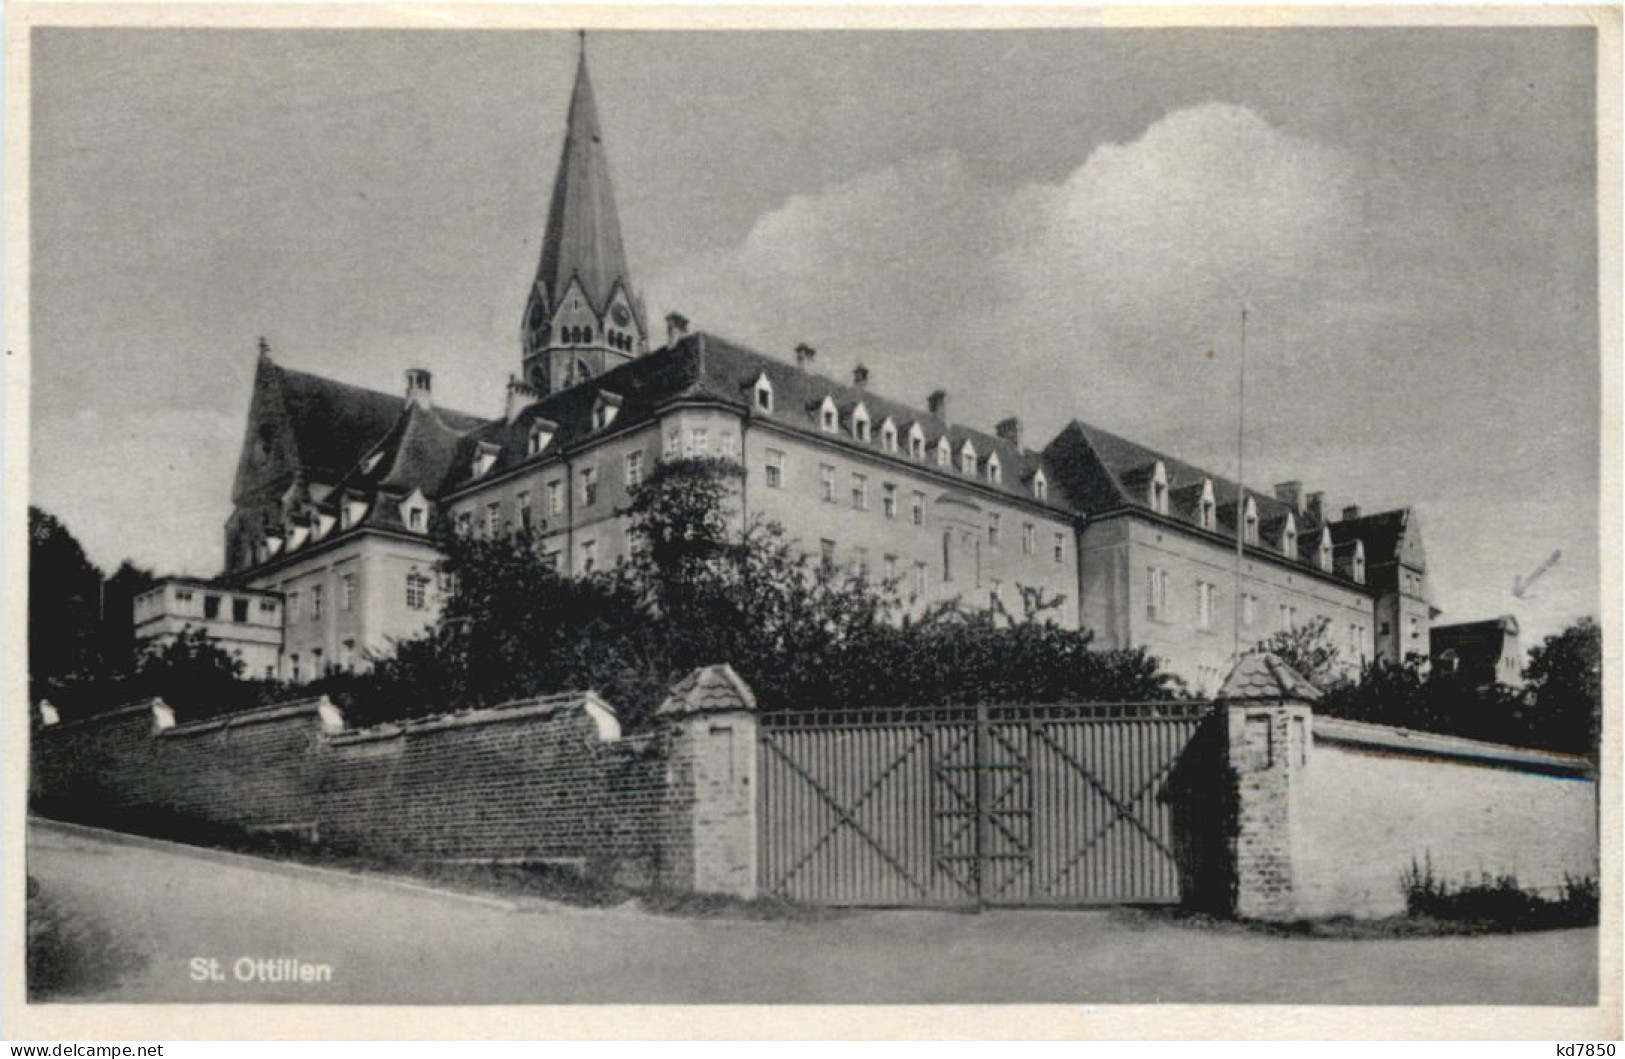 St. Ottilien, Erzabtei, - Landsberg